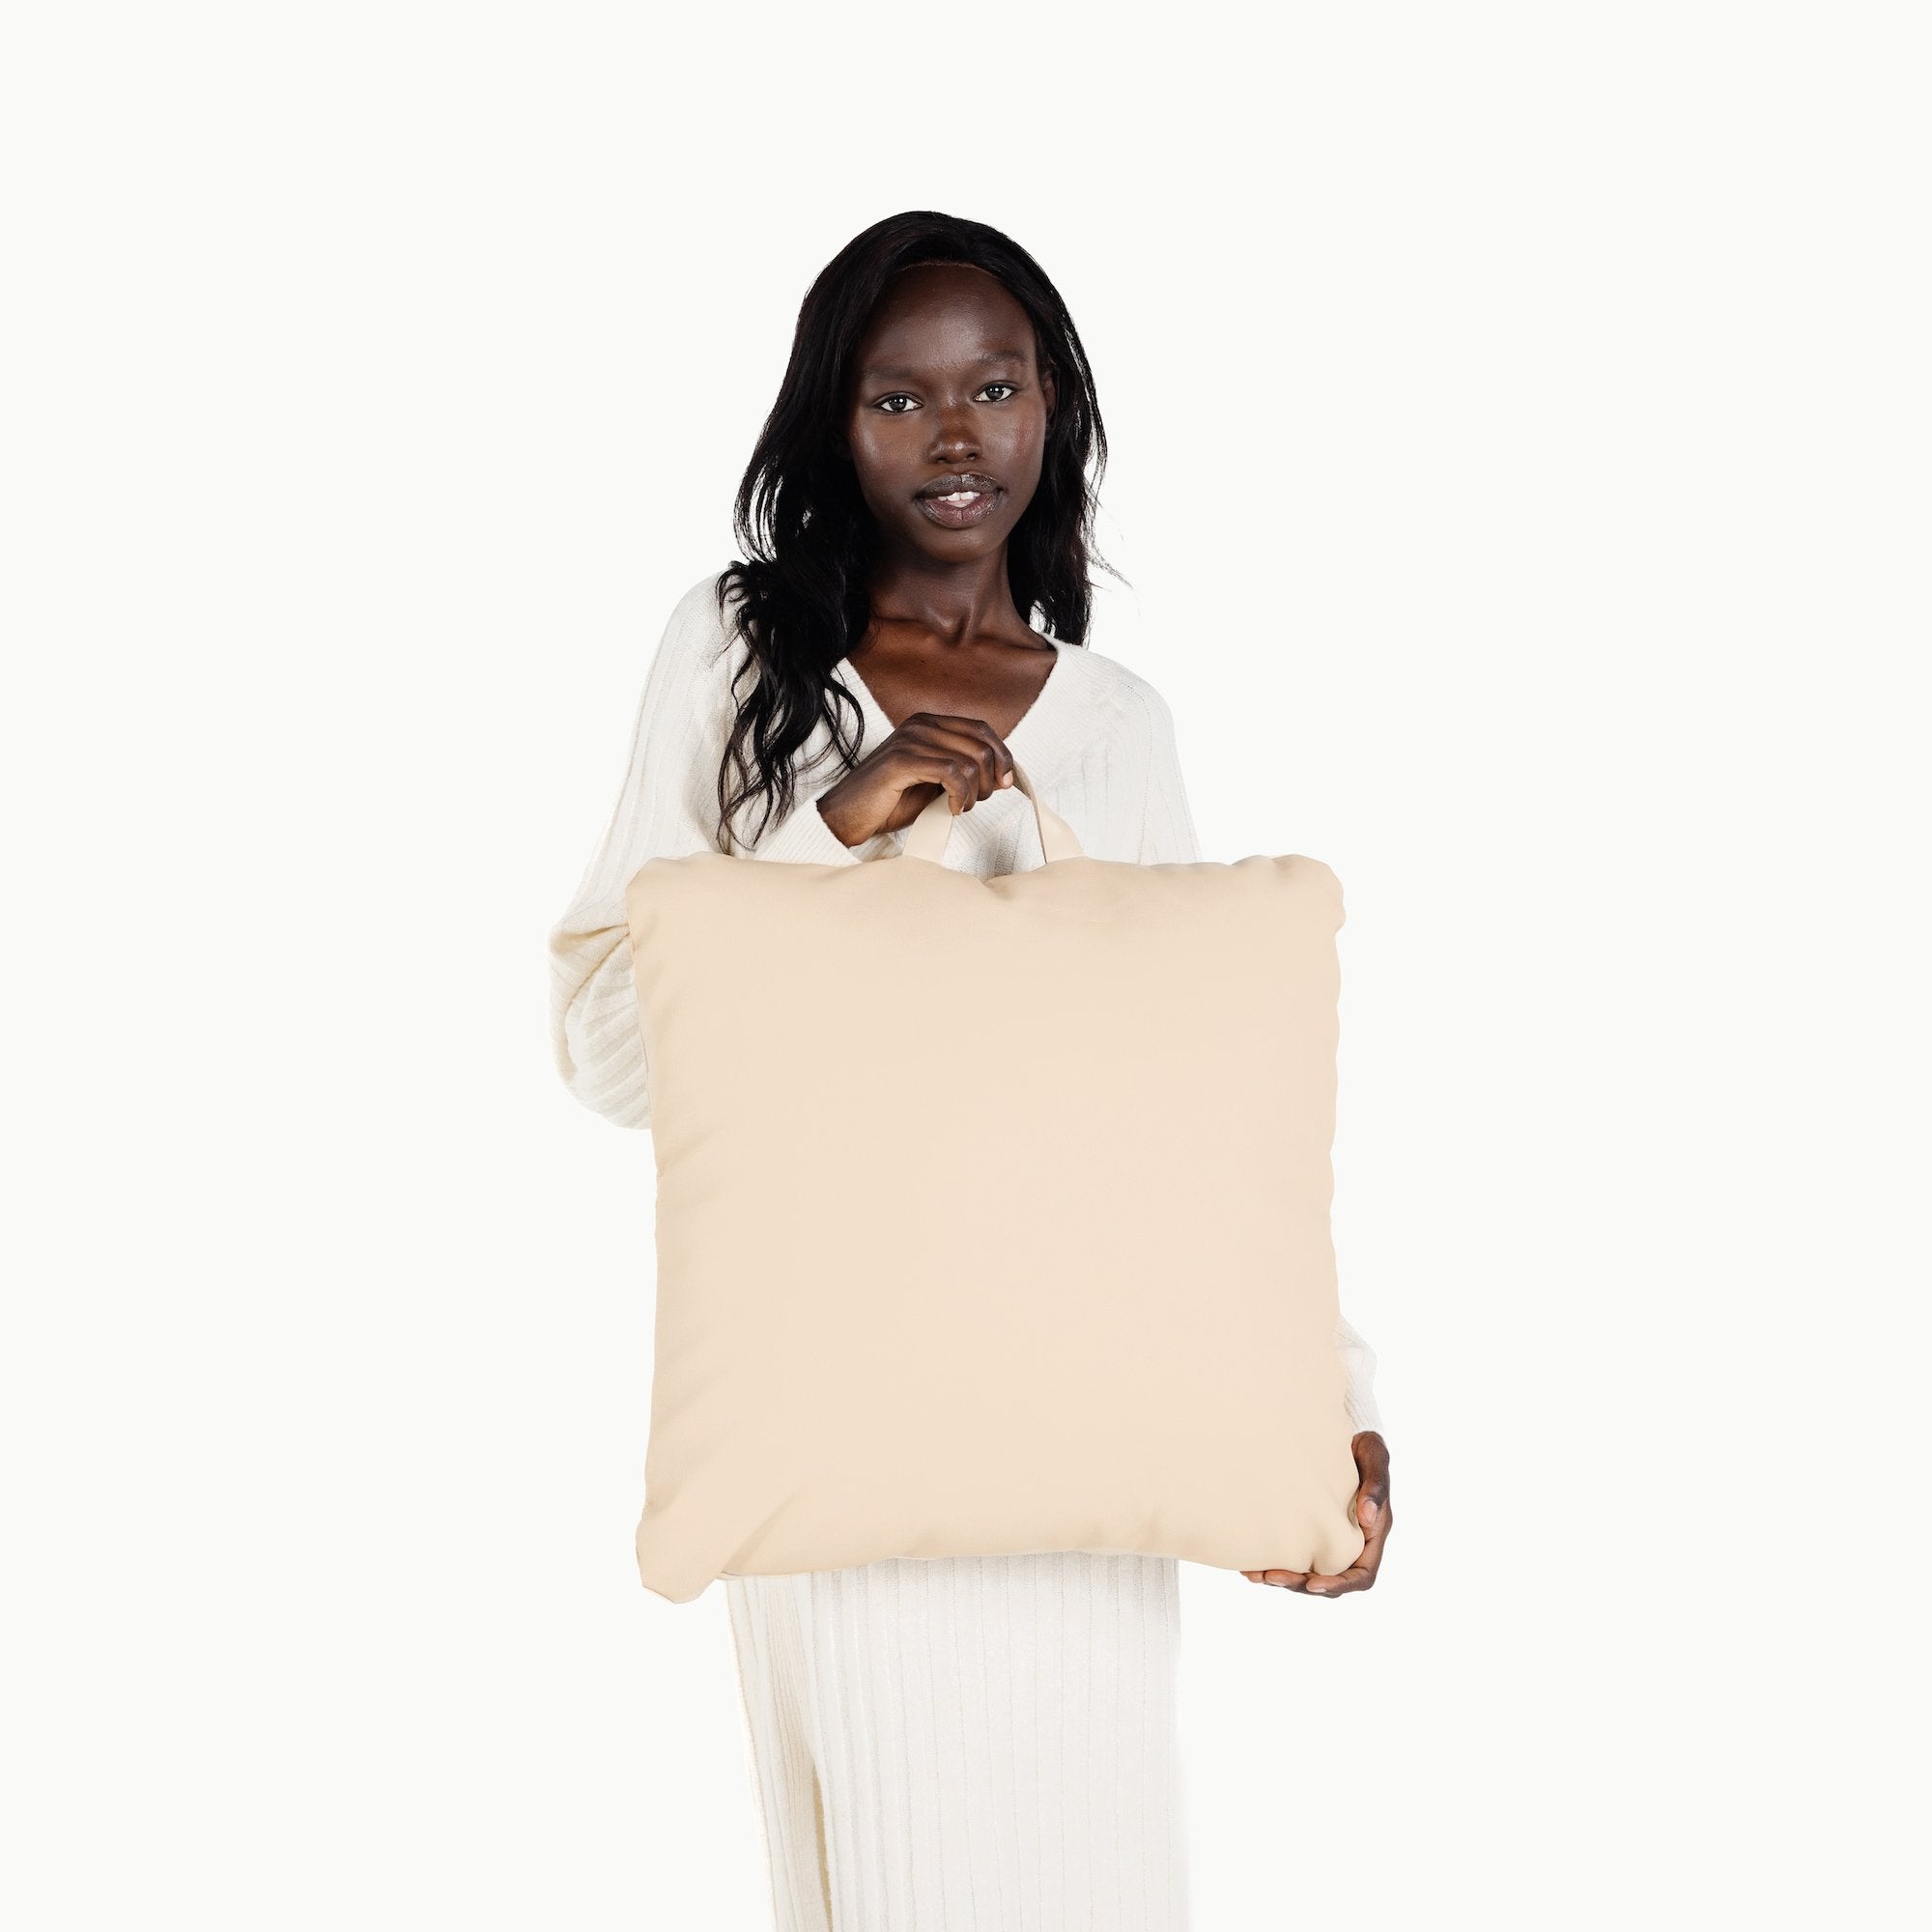 Petal / Square@Woman holding the petal square mini floor cushion